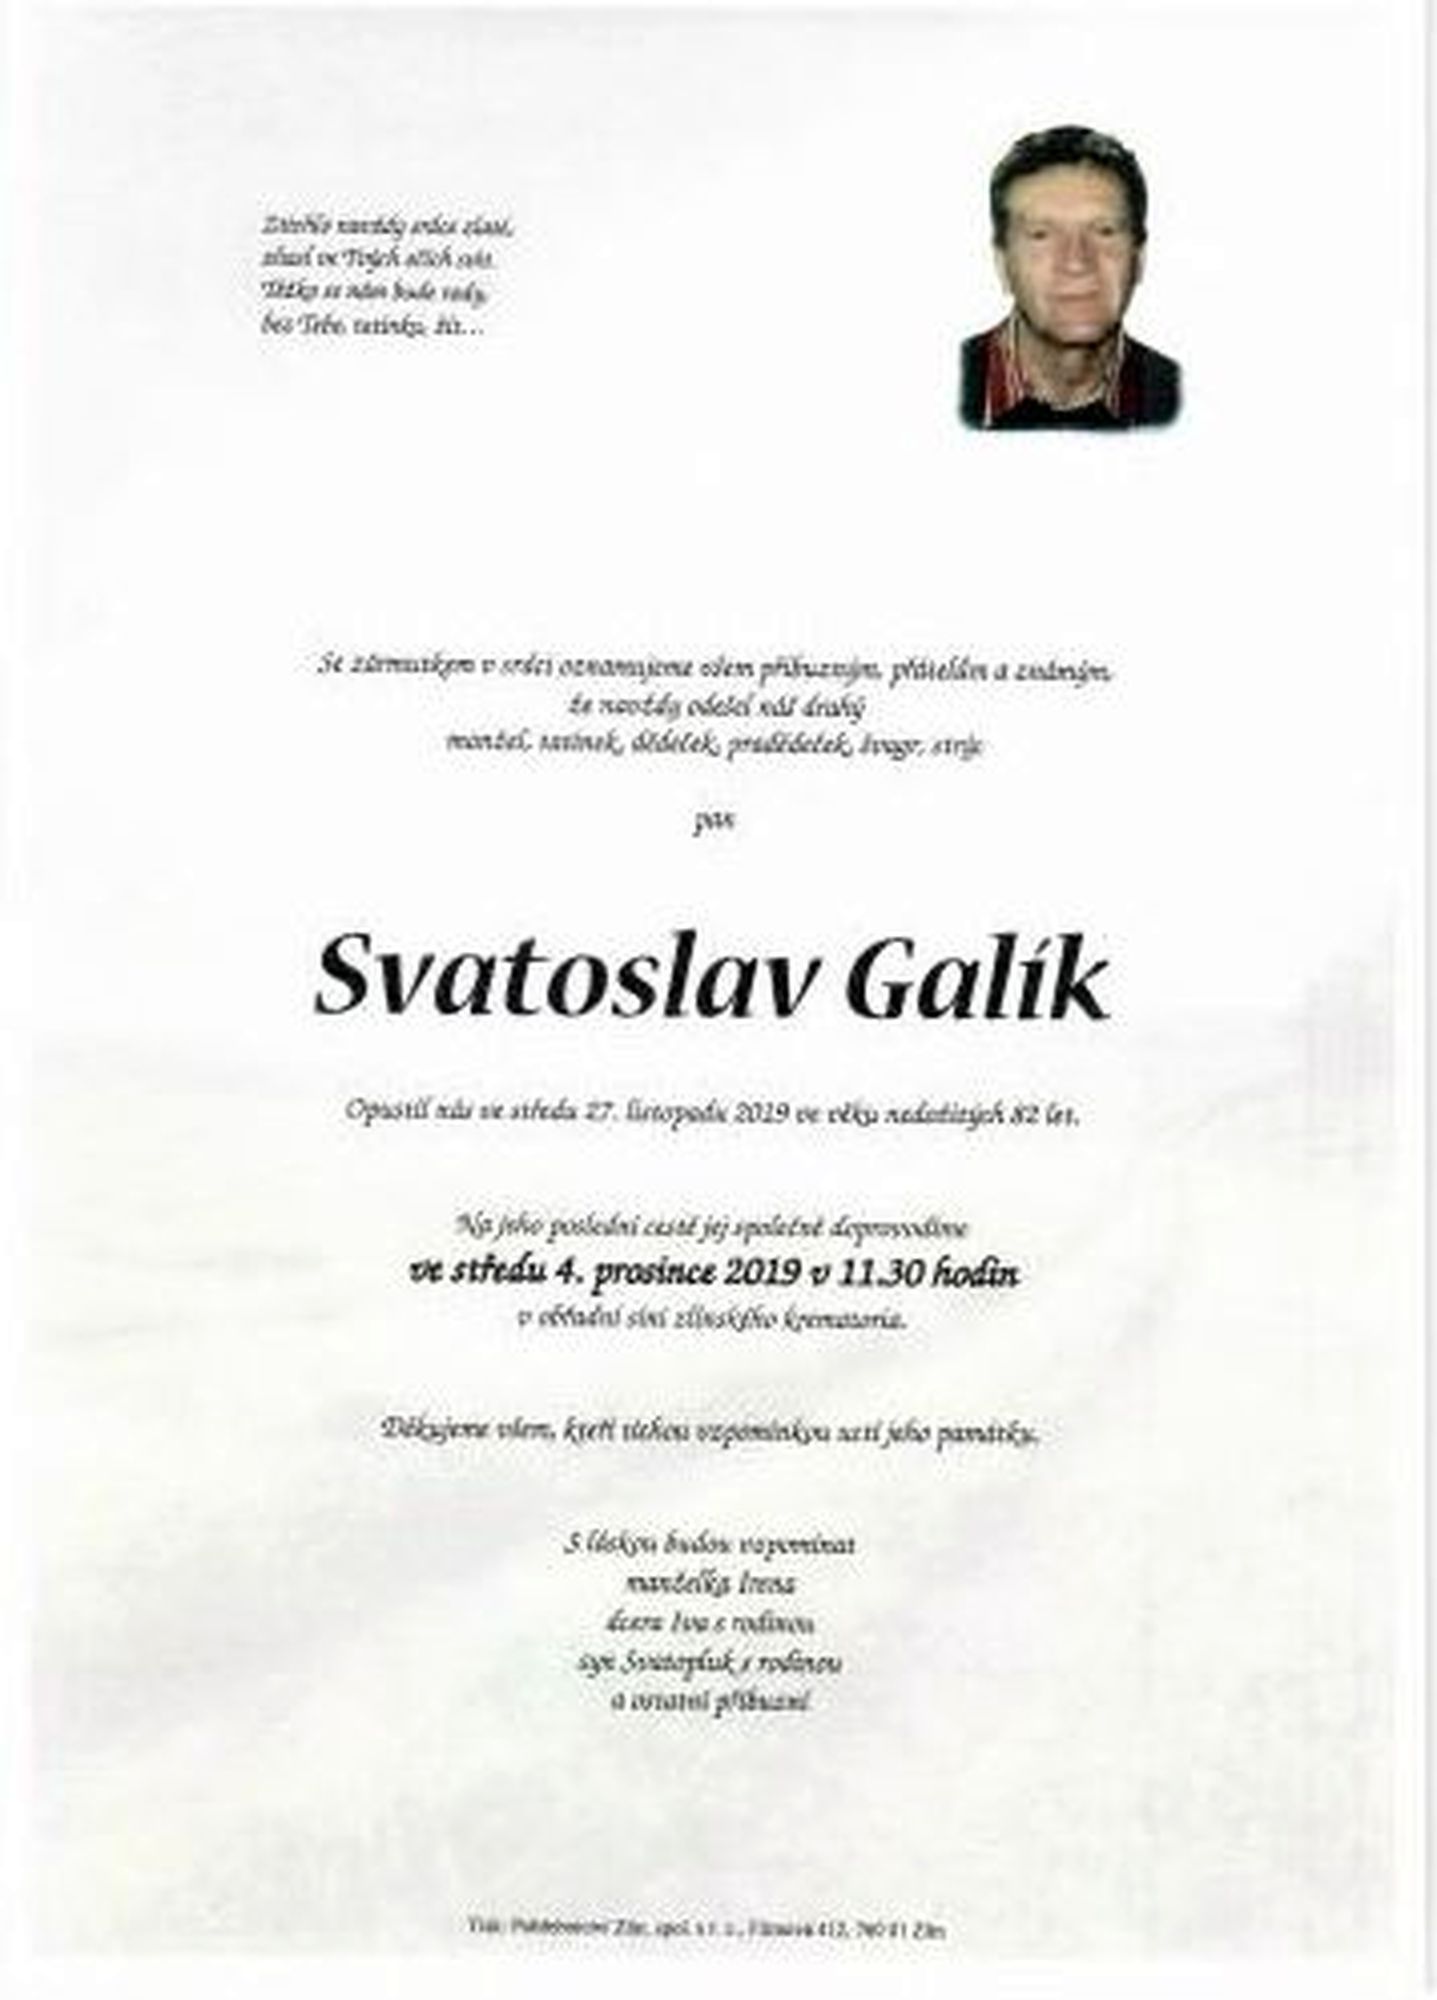 Svatoslav Galík